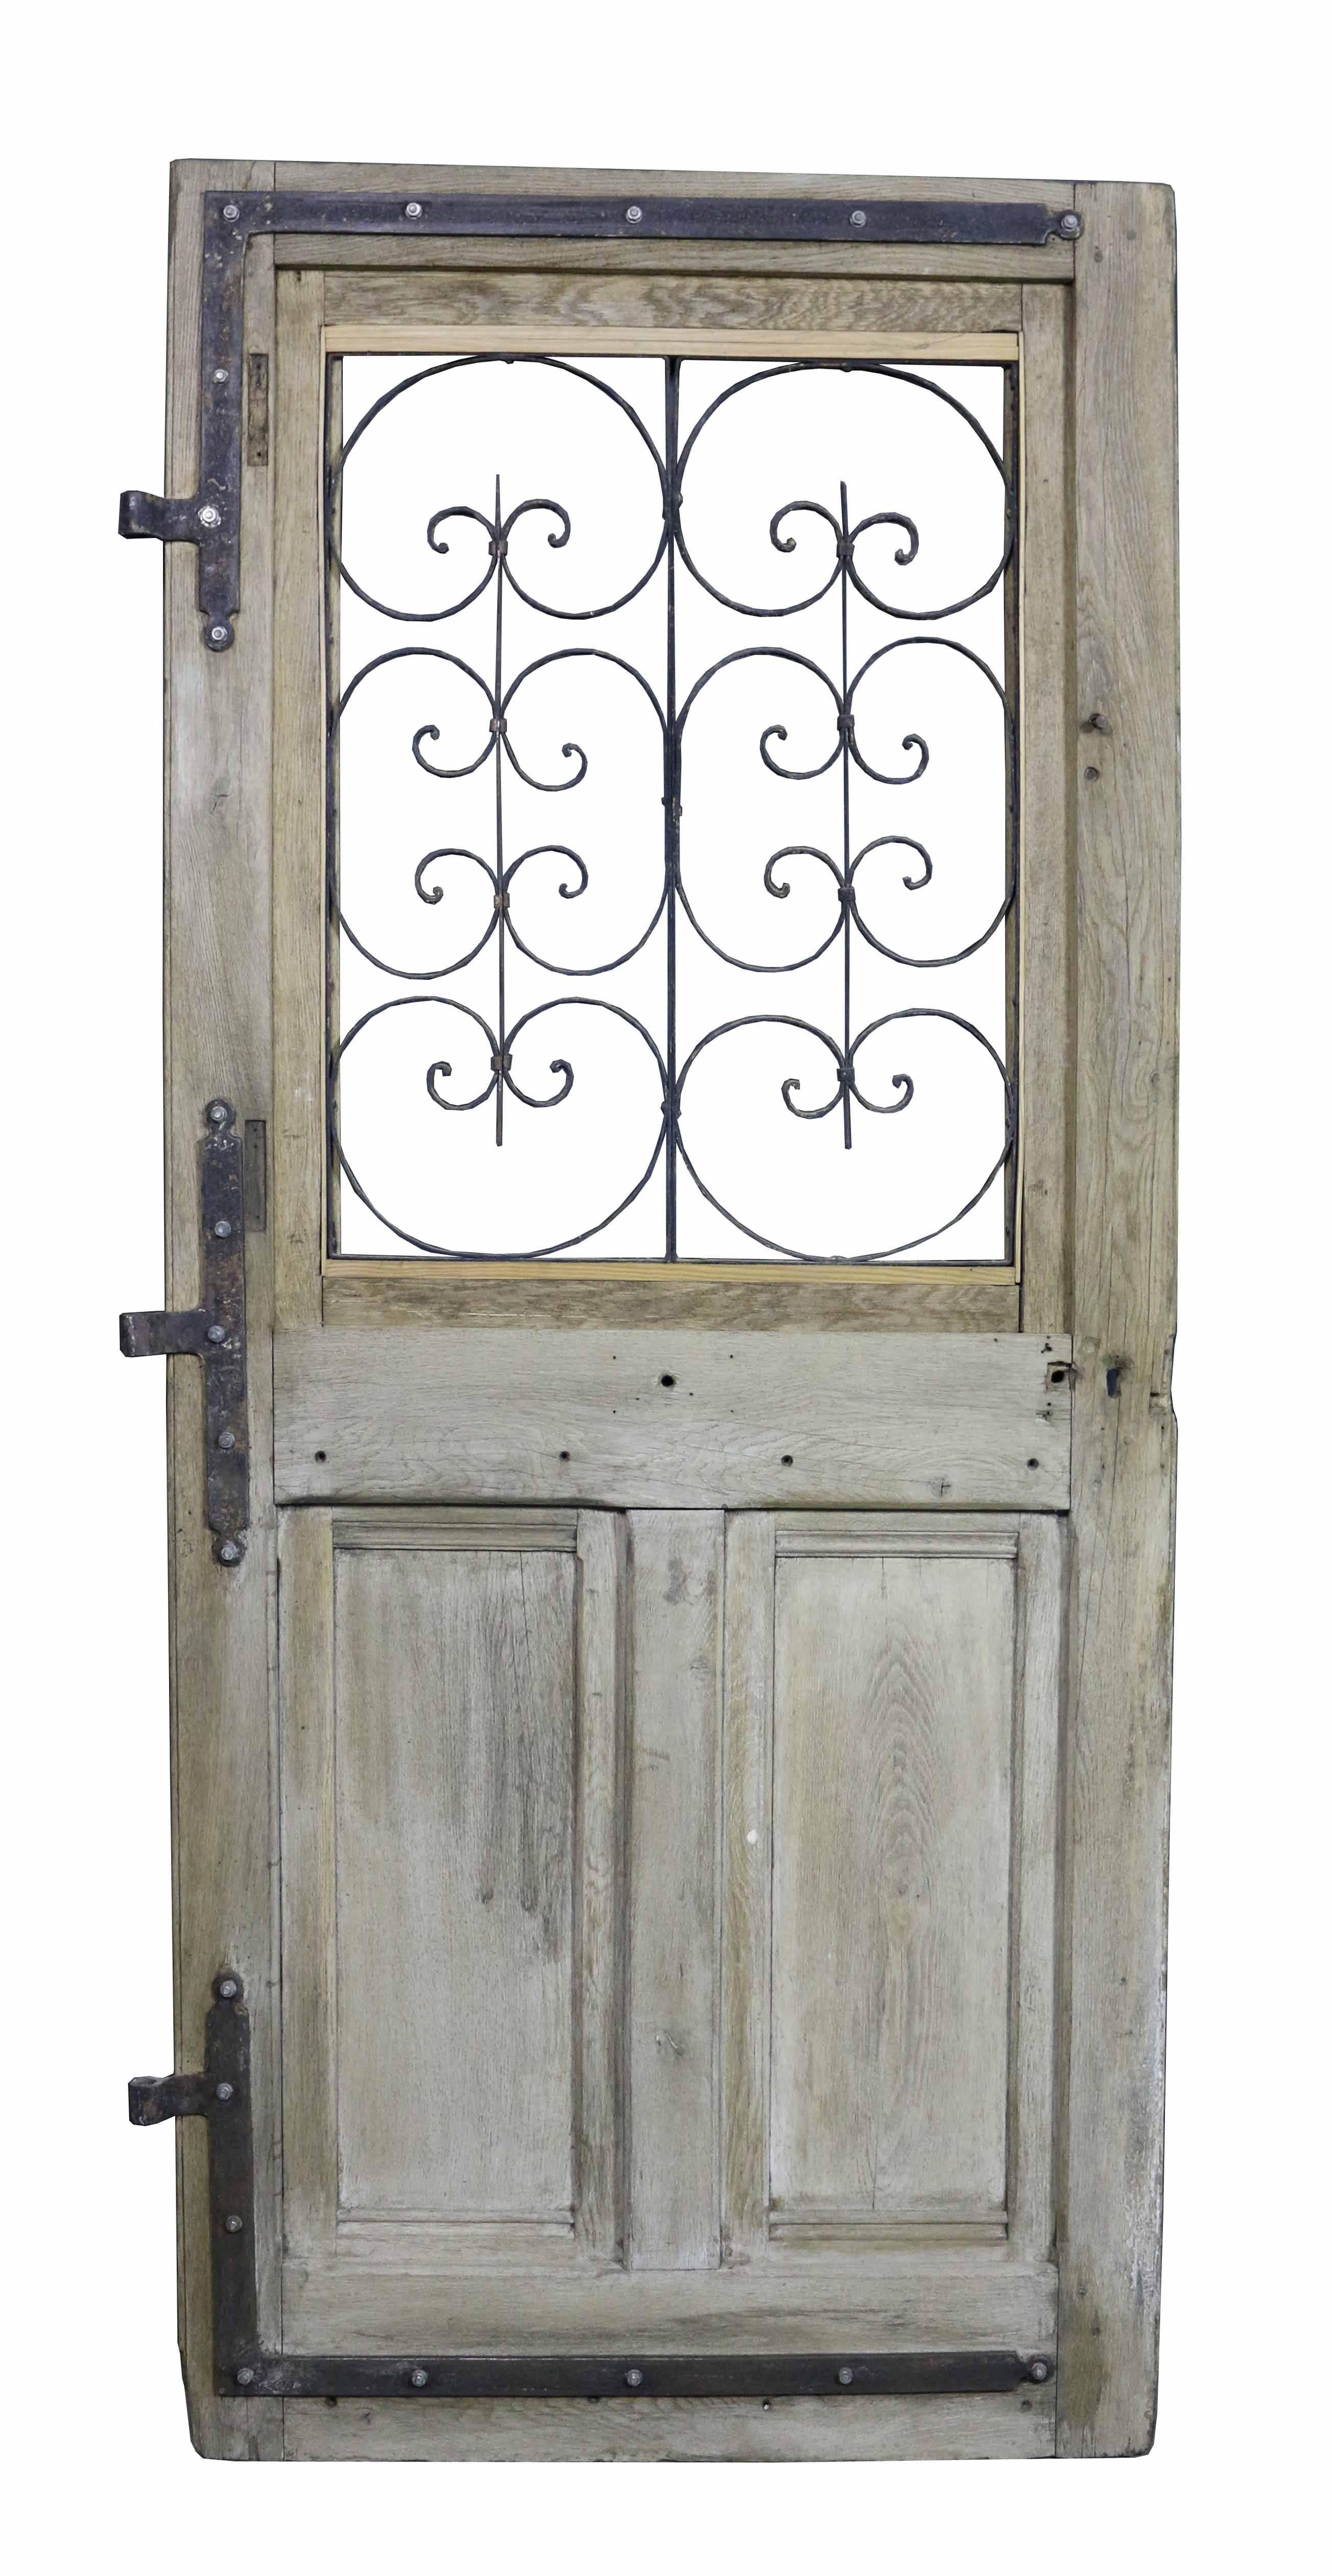 Antique French oak front door with iron grills. This door is not glazed.